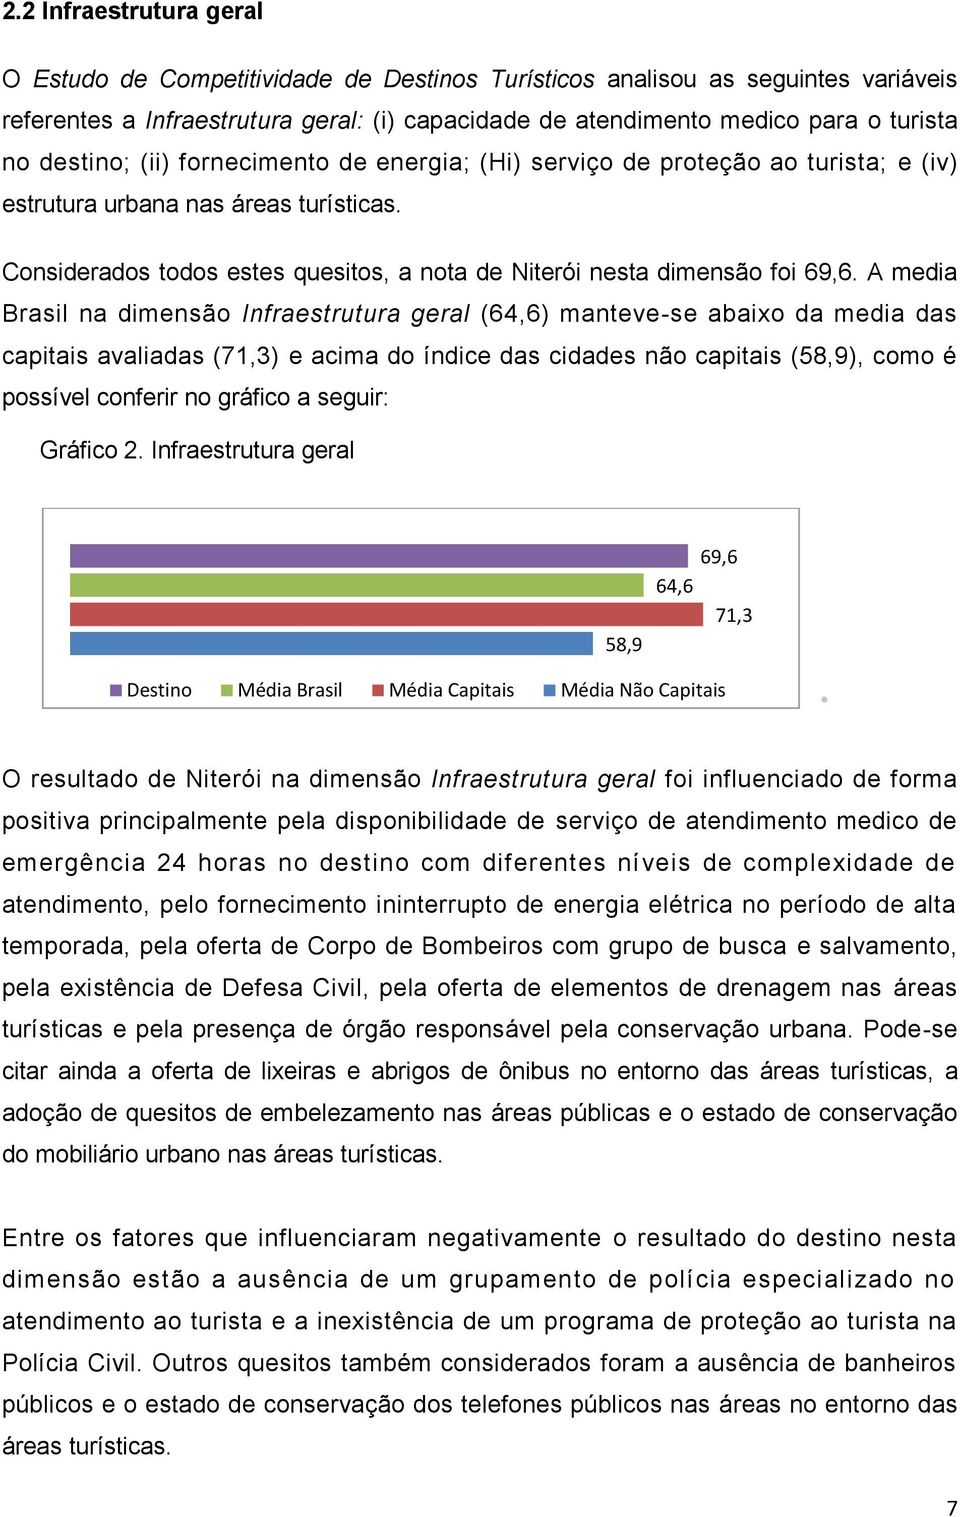 A media Brasil na dimensão Infraestrutura geral (64,6) manteve-se abaixo da media das capitais avaliadas (71,3) e acima do índice das cidades não capitais (58,9), como é possível conferir no gráfico